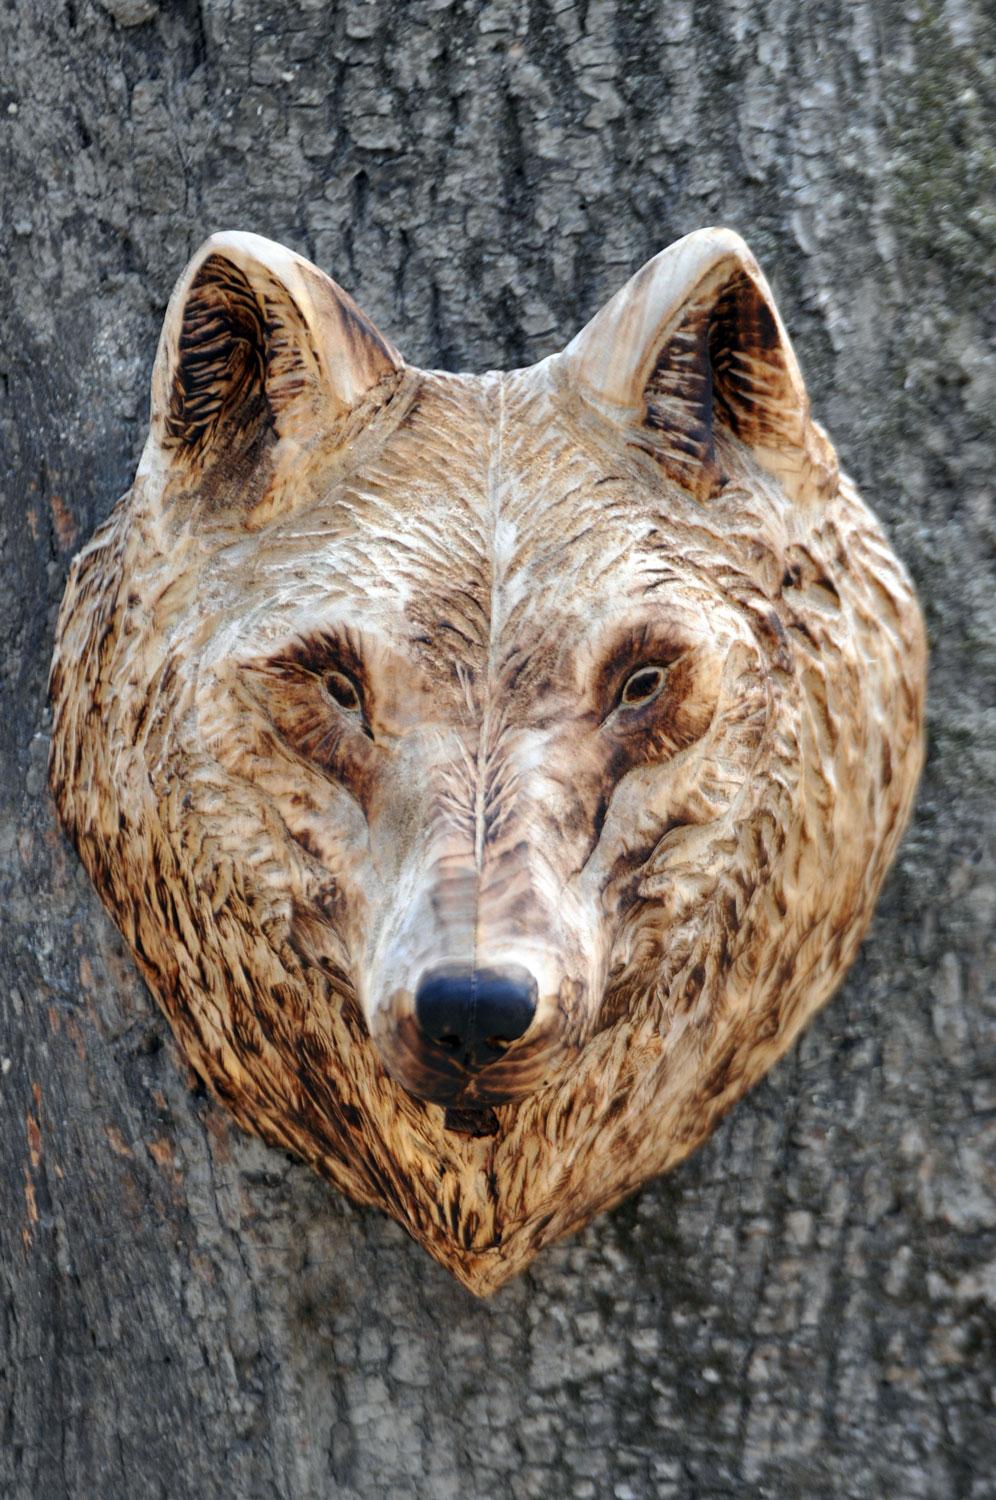 vlk-drevorezba-plastika-vyrezavani-carwing-woodcarving-trofej-hlava-radekzdrazil-20190331-04